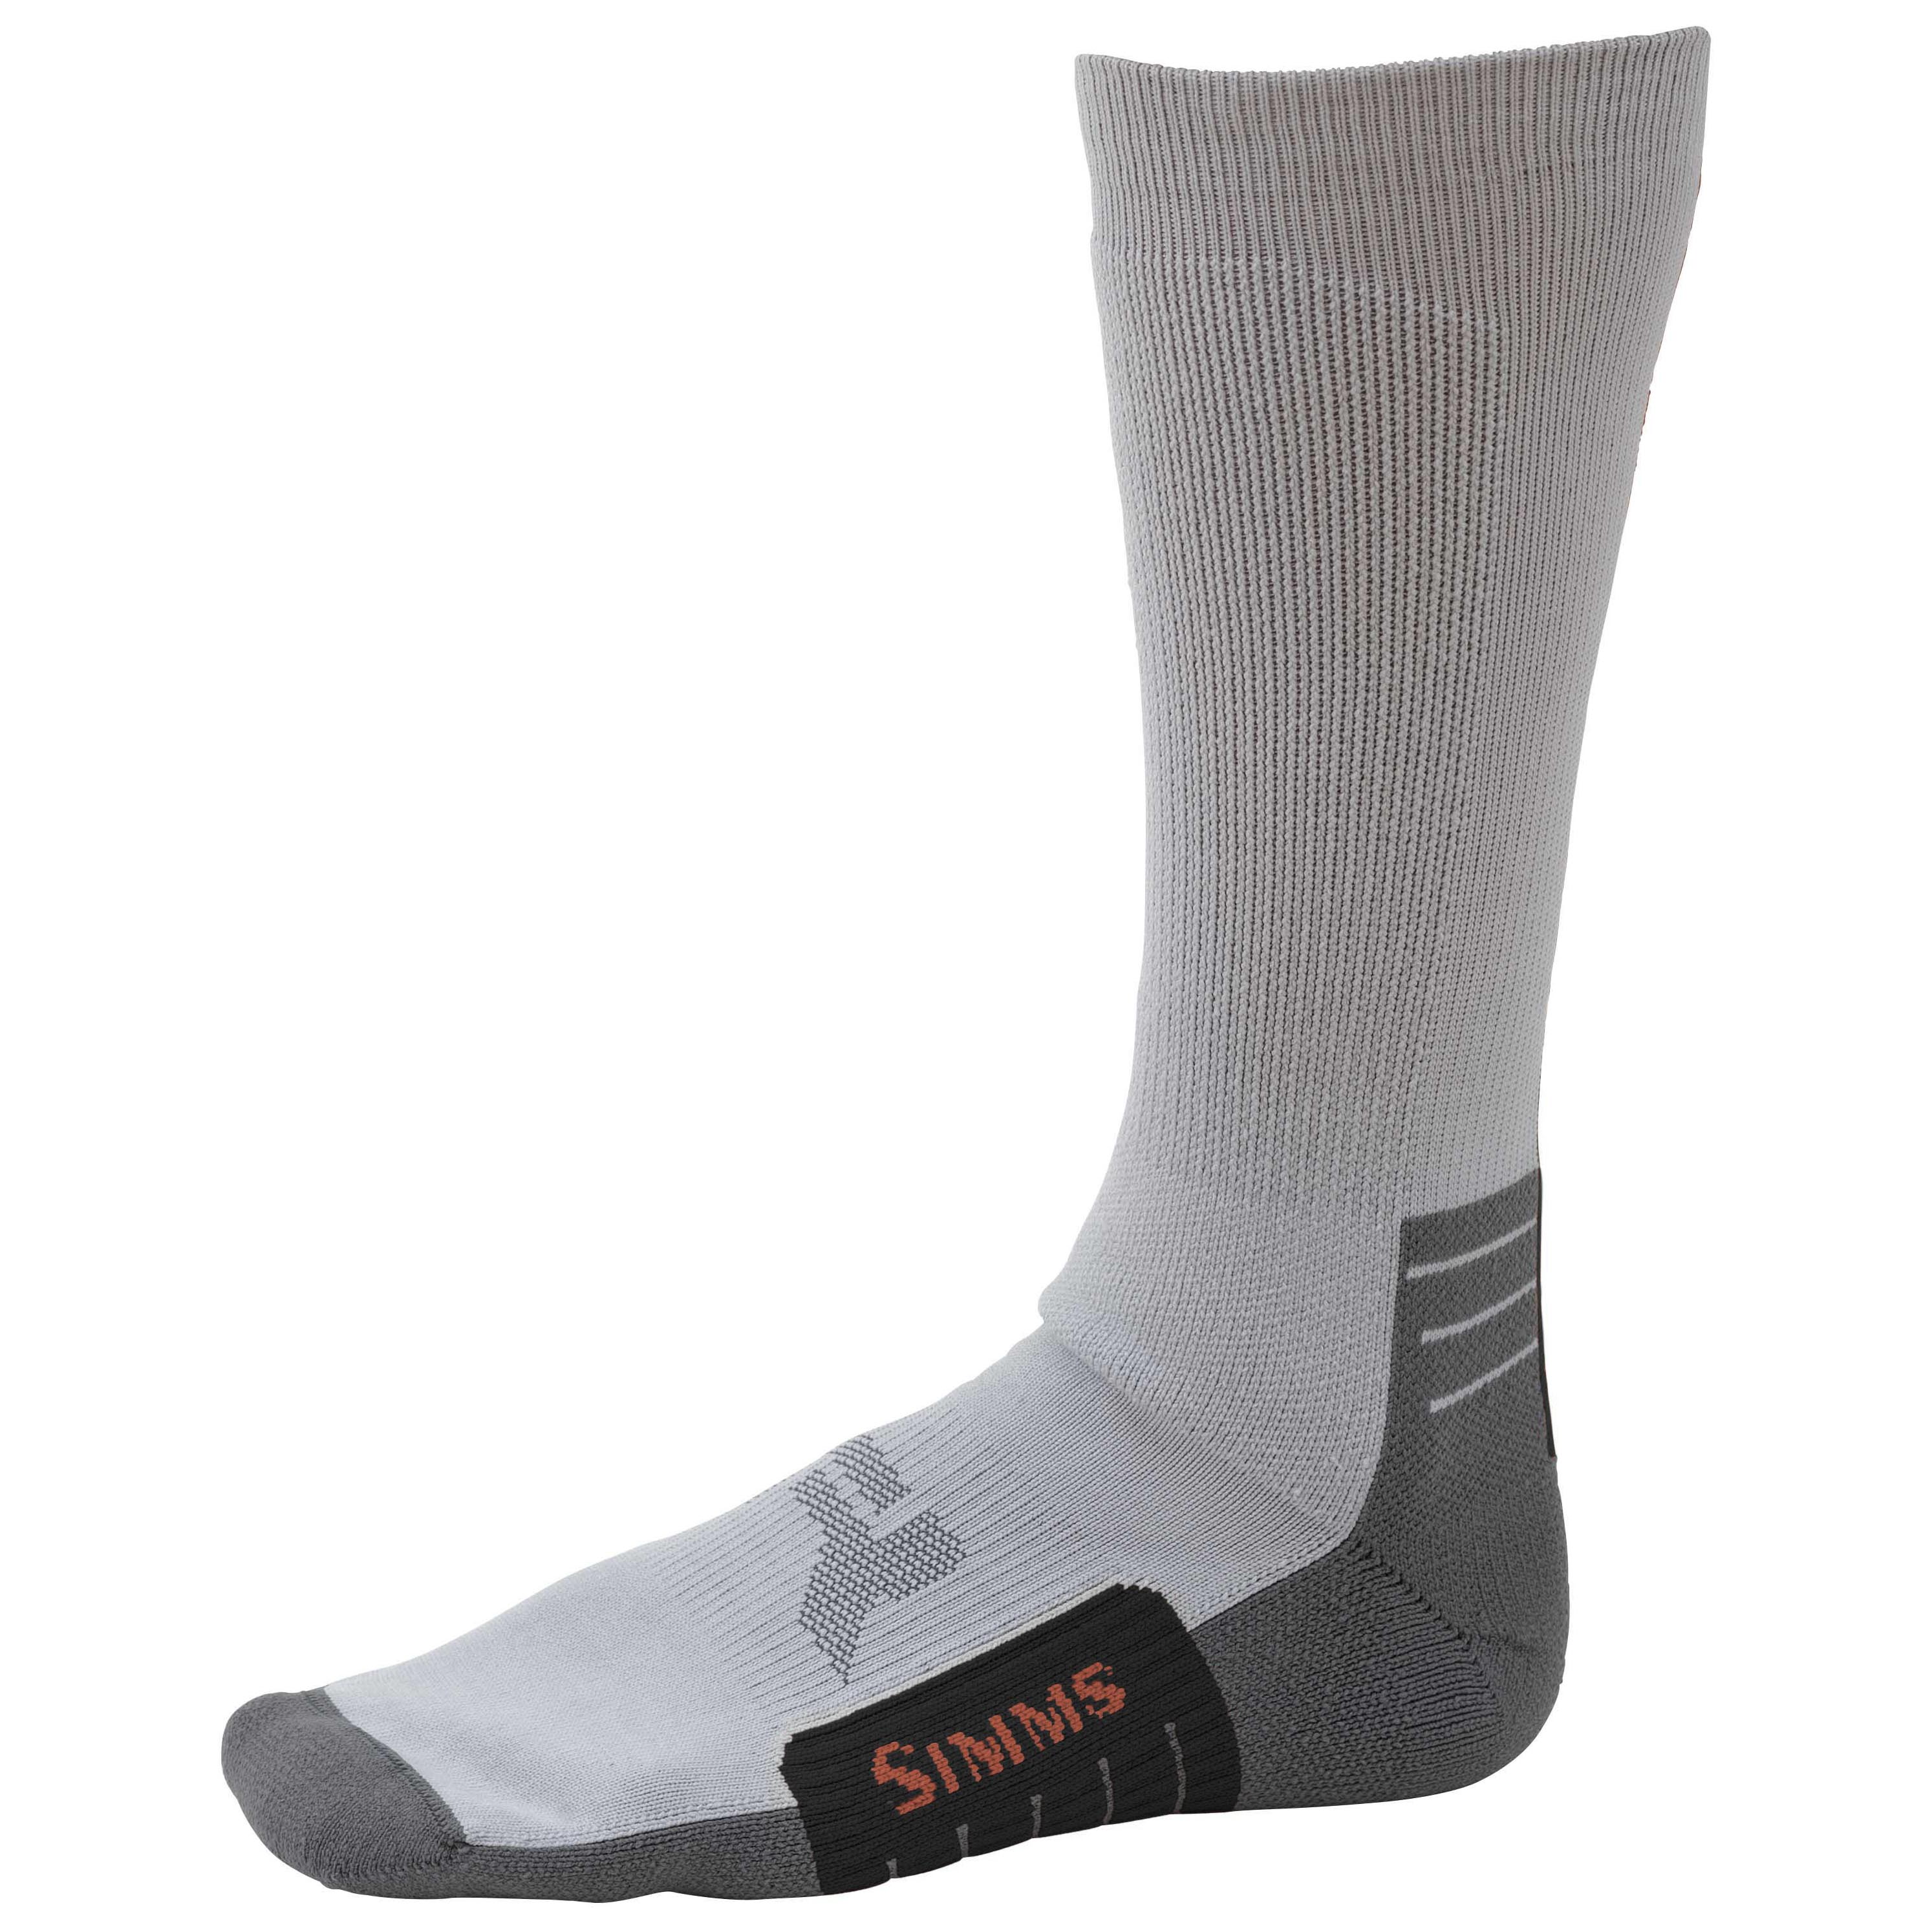 Neoprene Wading Socks, Fly Fishing Gear: Store Name